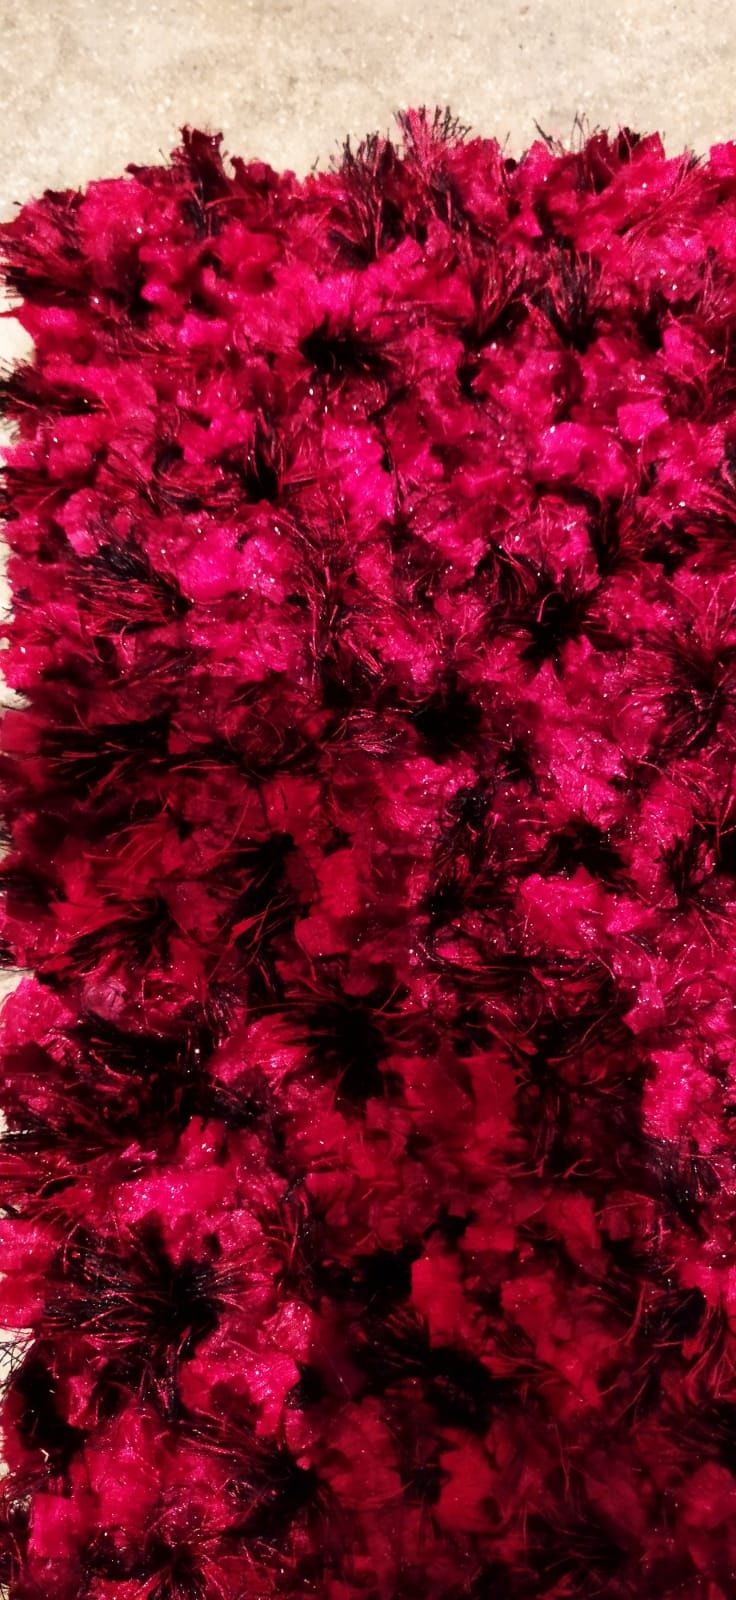 Carpete vermelha - Nova